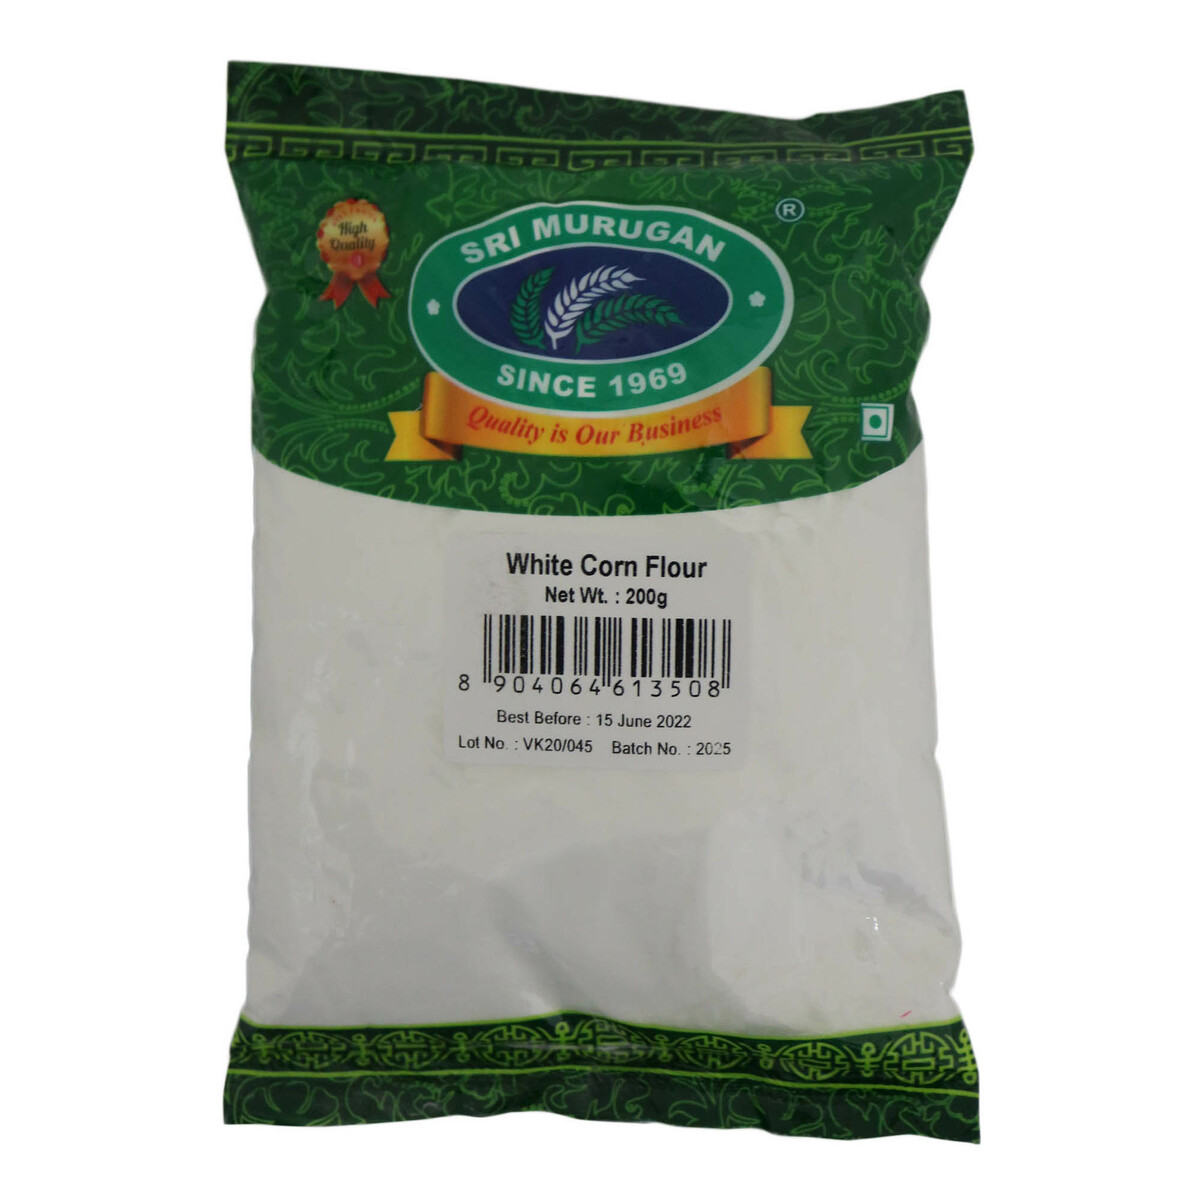 Sri Murugan White Corn Flour 200g